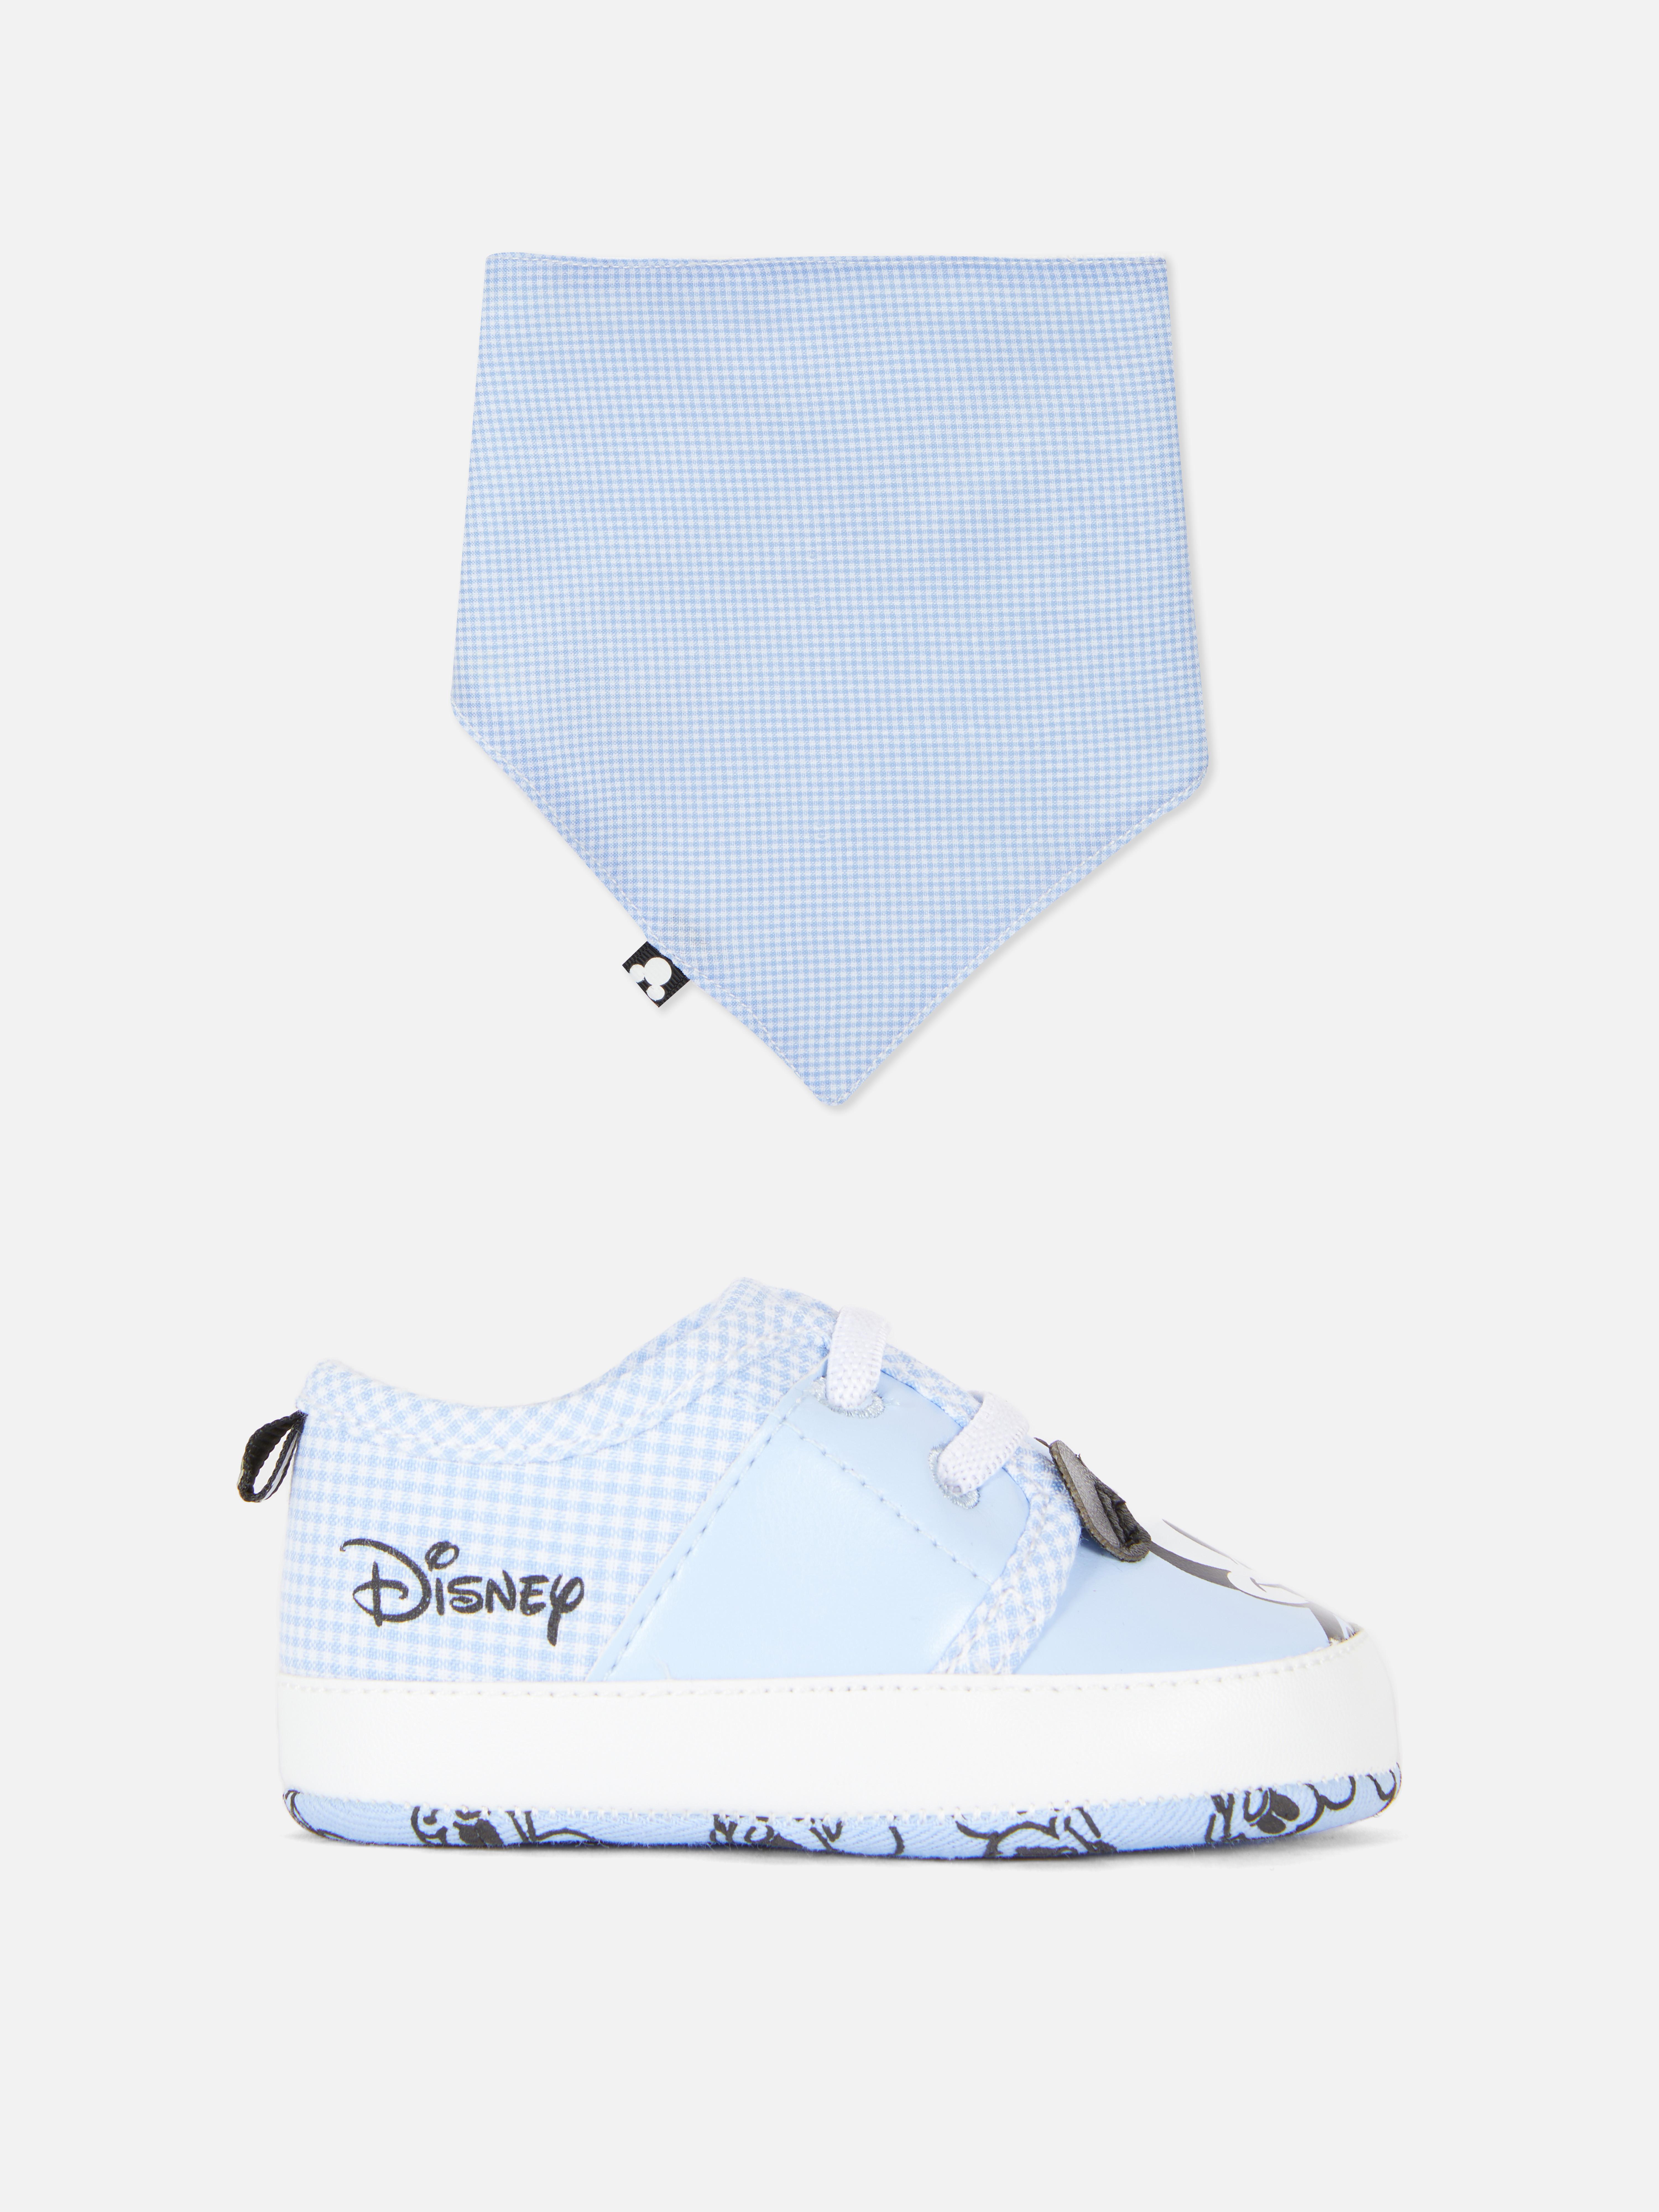 Schoenen en slabbetjes-set Disney's Mickey Mouse